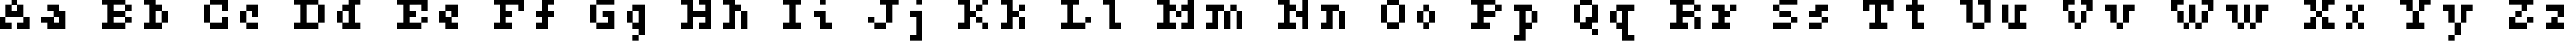 Пример написания английского алфавита шрифтом ceriph 05_56